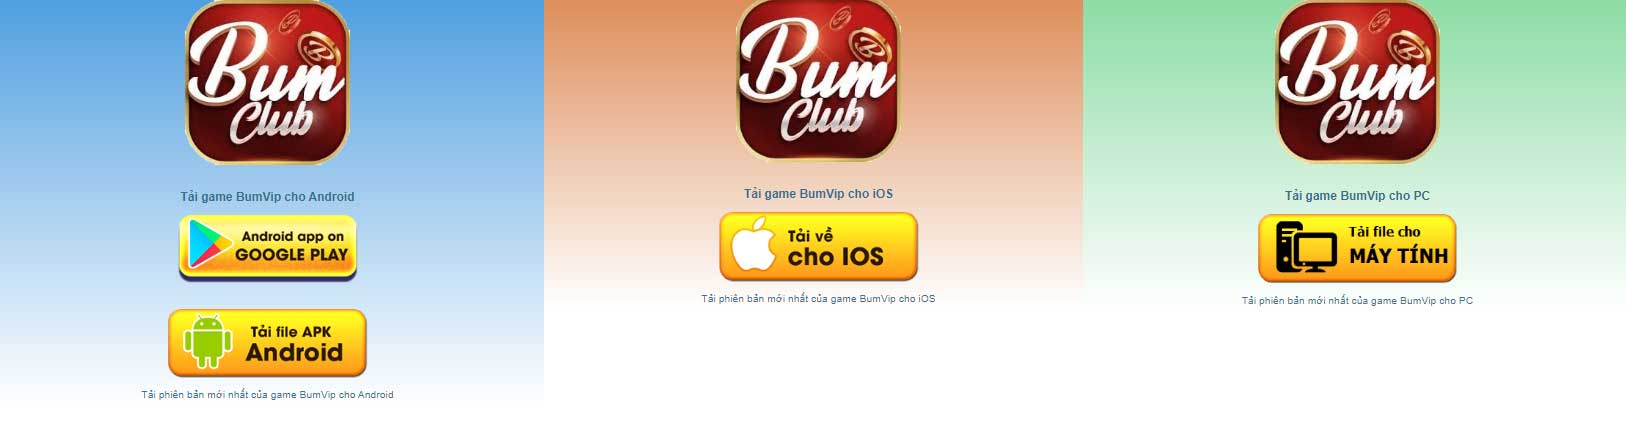 Game đa nền tảng – Cách tải BumClub Cổng game quốc tế iOS, APK, PC